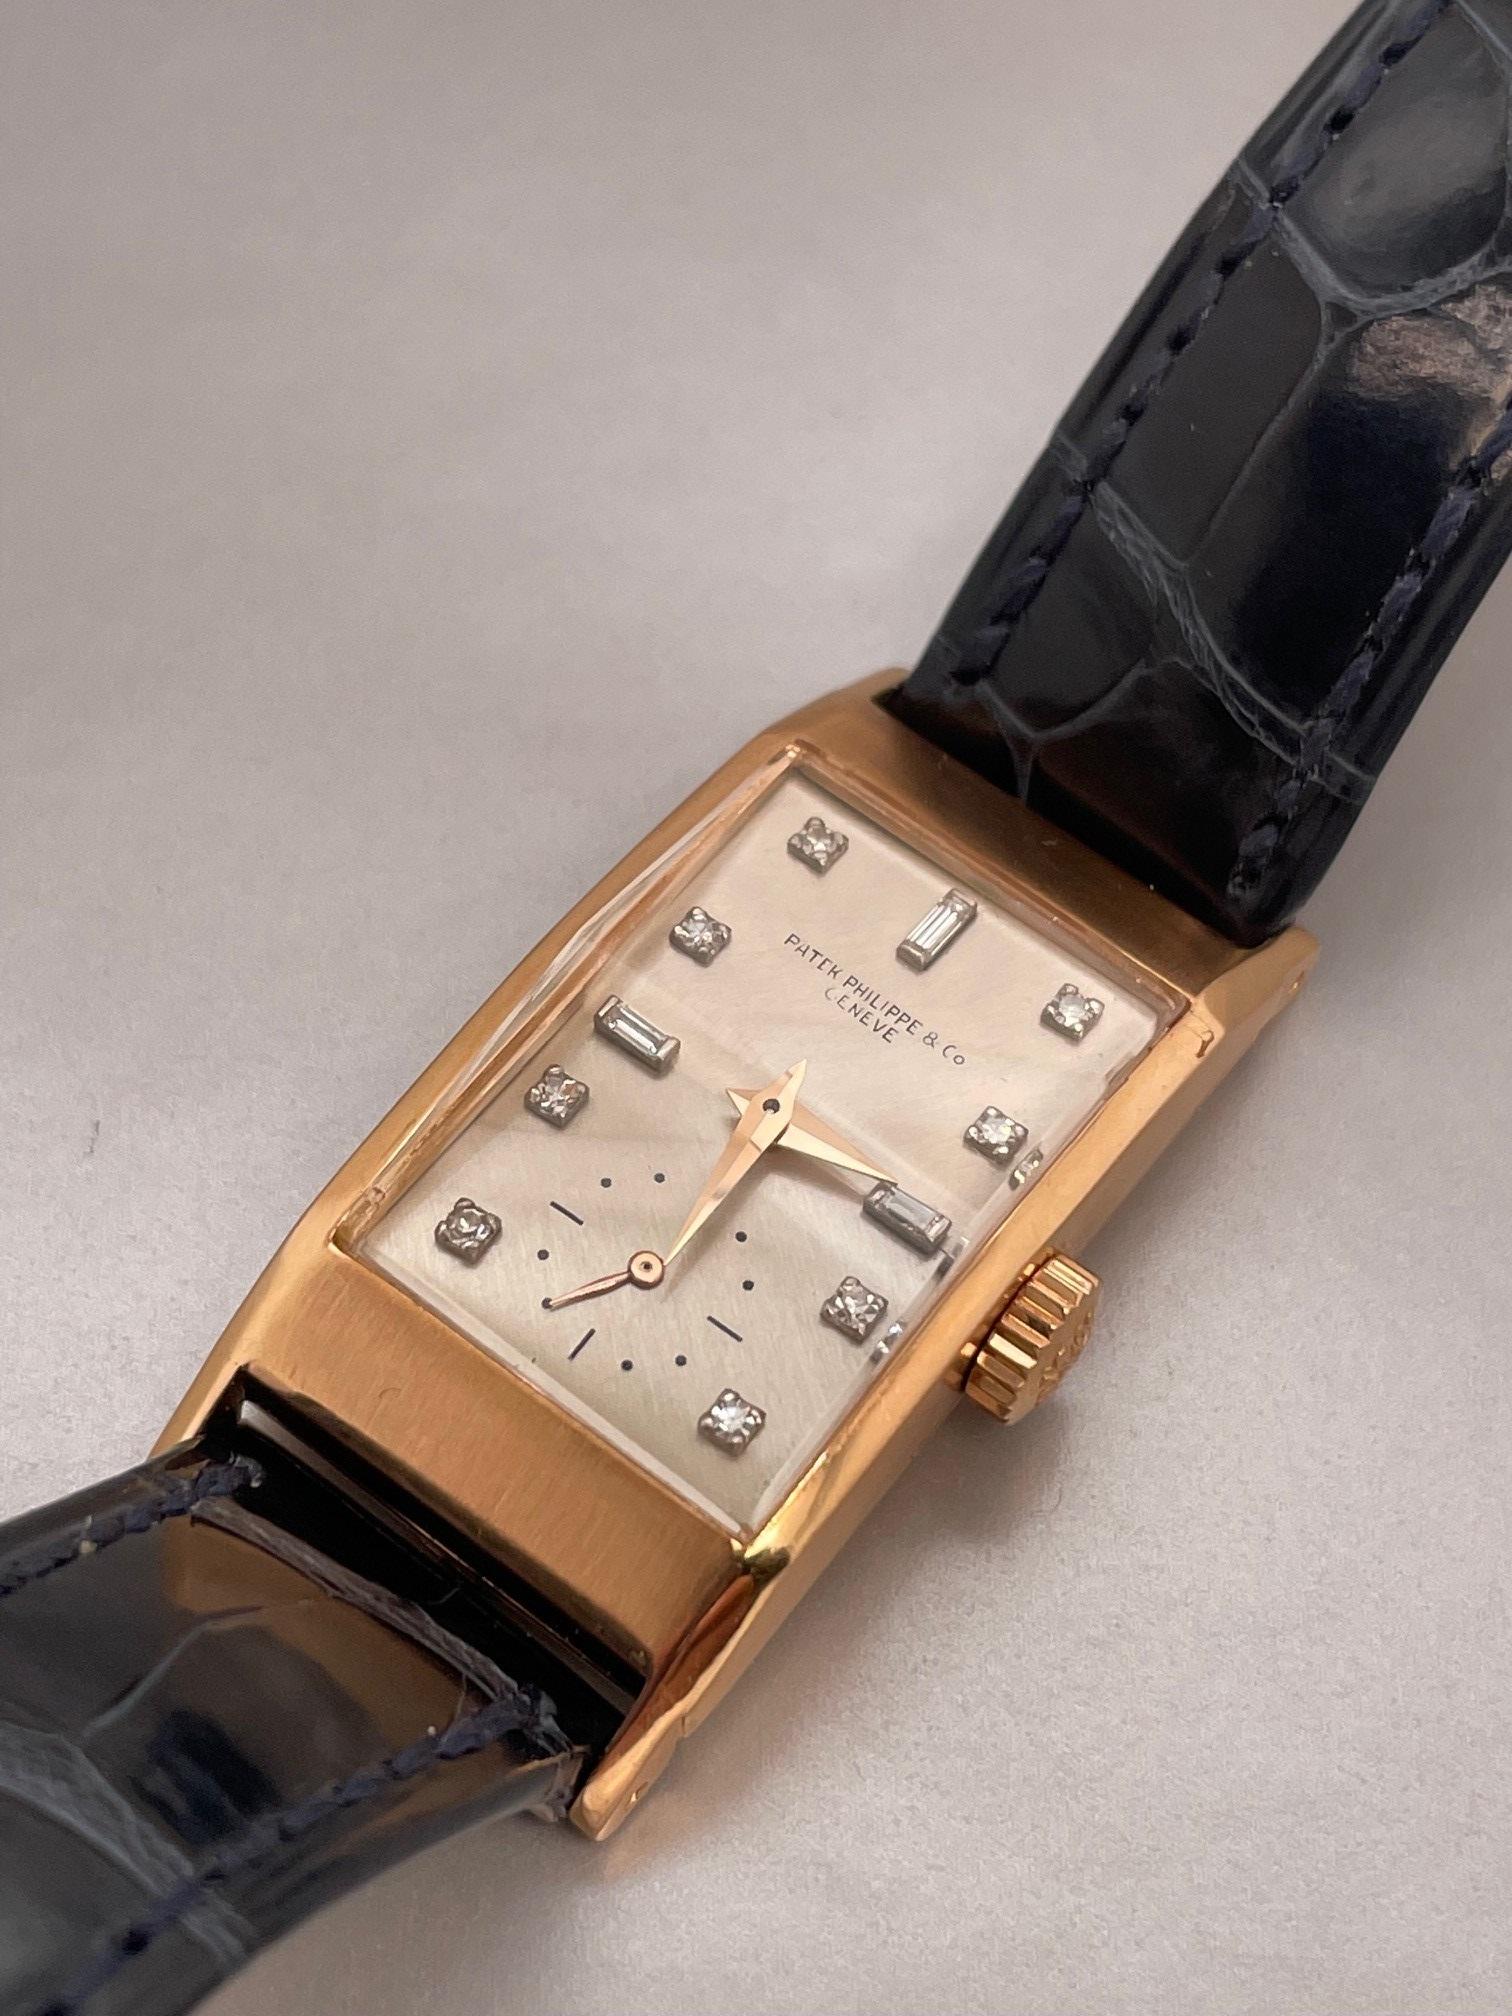 Vintage 18k Rose Gold Patek Philippe rechteckige Uhr mit einem silbernen Zifferblatt mit Diamant Indexen, erhöhte Emaille Druck, original facettierten Kristall, Patek Krone, Watch Referenznummer # 2461,  9-90 Uhrwerk, s#843xxxx, Gehäuse Seriennummer